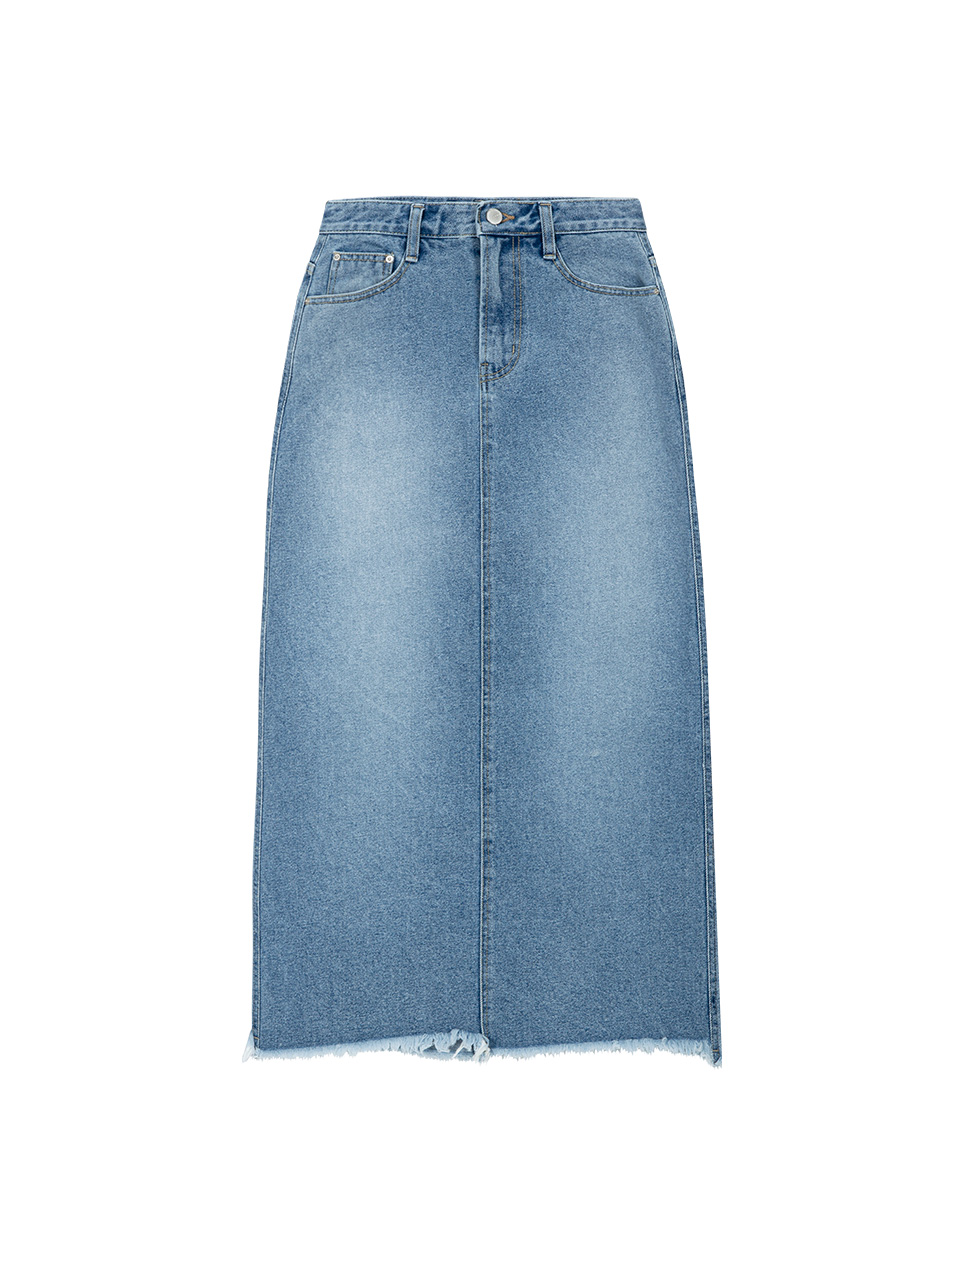 [SKIRT] Sydney Long Skirt